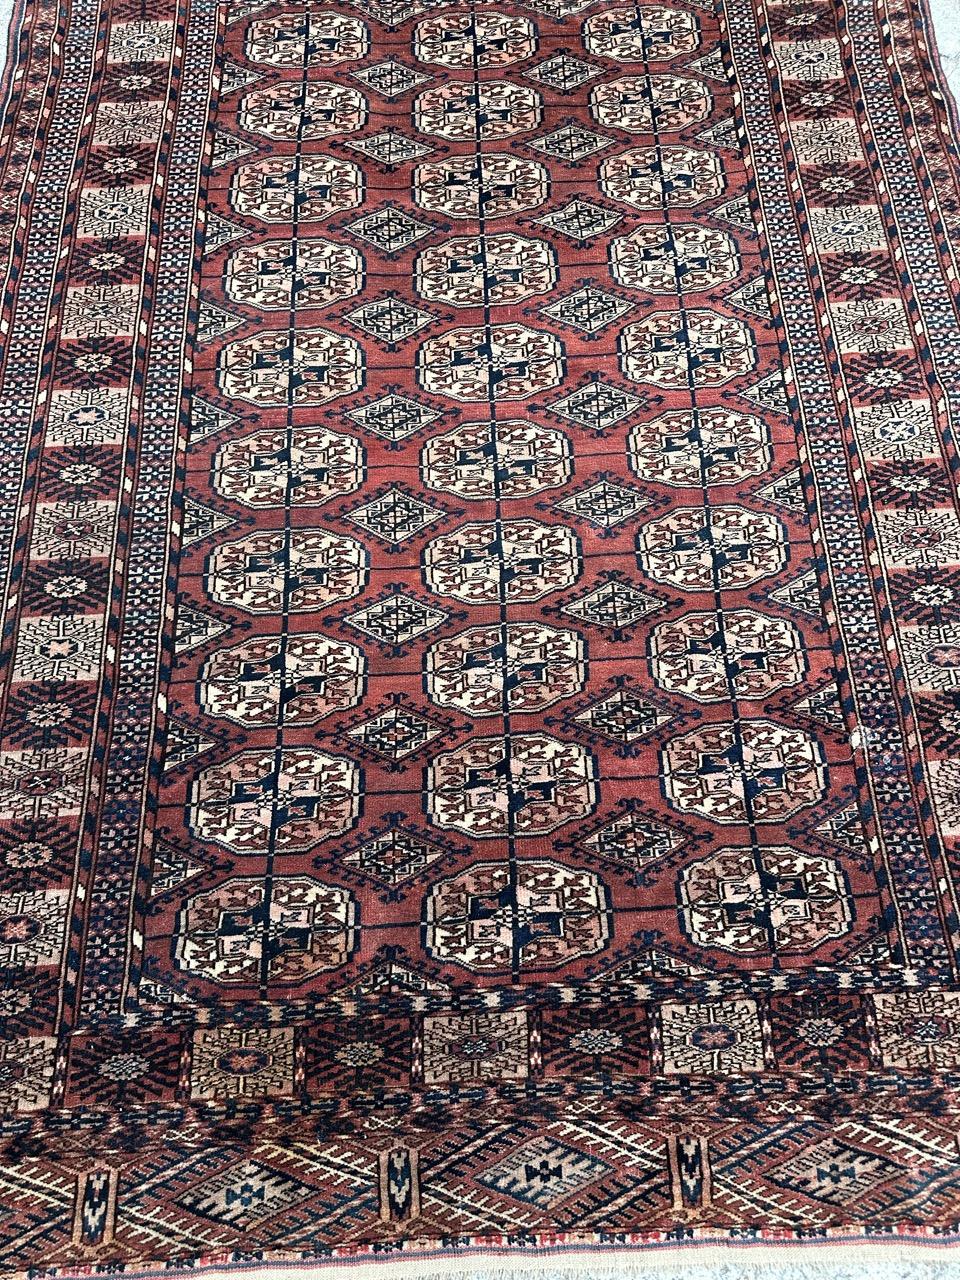 Entdecken Sie einen exquisiten turkmenischen Bokhara-Teppich aus dem späten 19. Jahrhundert, der durch sein geometrisches Muster und seine atemberaubenden Naturtöne besticht. Dieser Teppich, der in aufwändiger Handarbeit geknüpft wurde, zeigt die